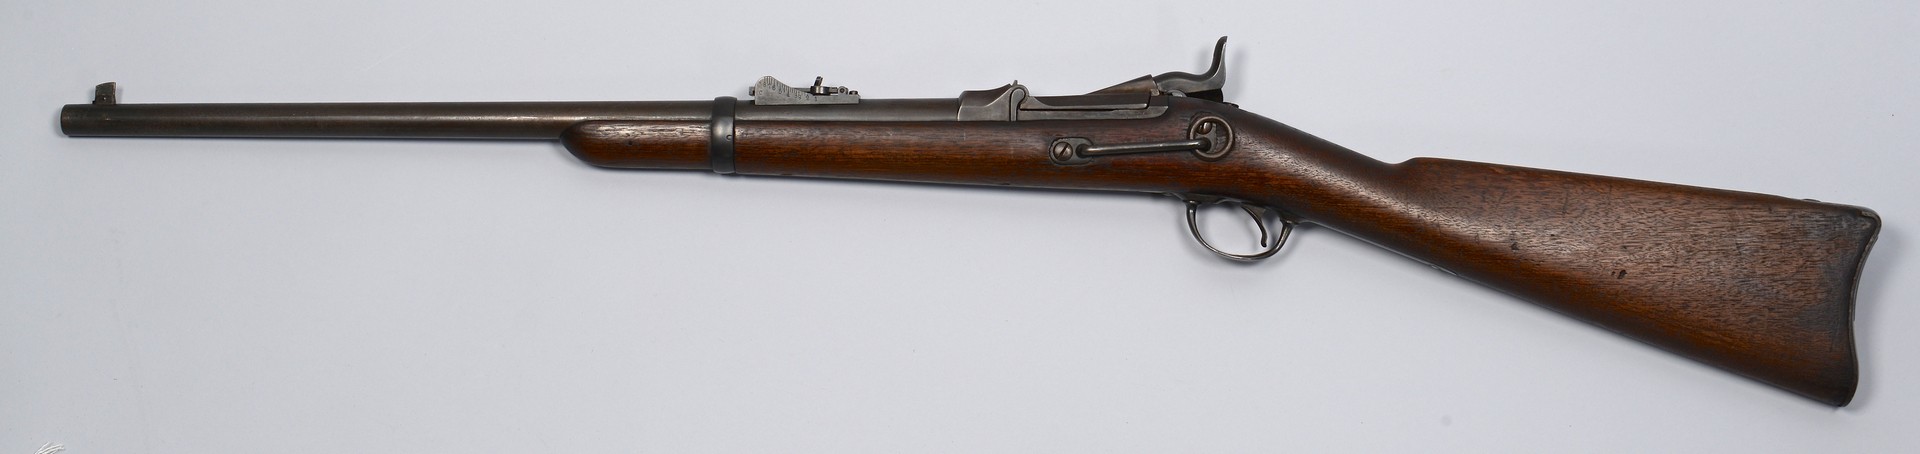 Lot 196: U.S. Model 1873 Springfield Carbine